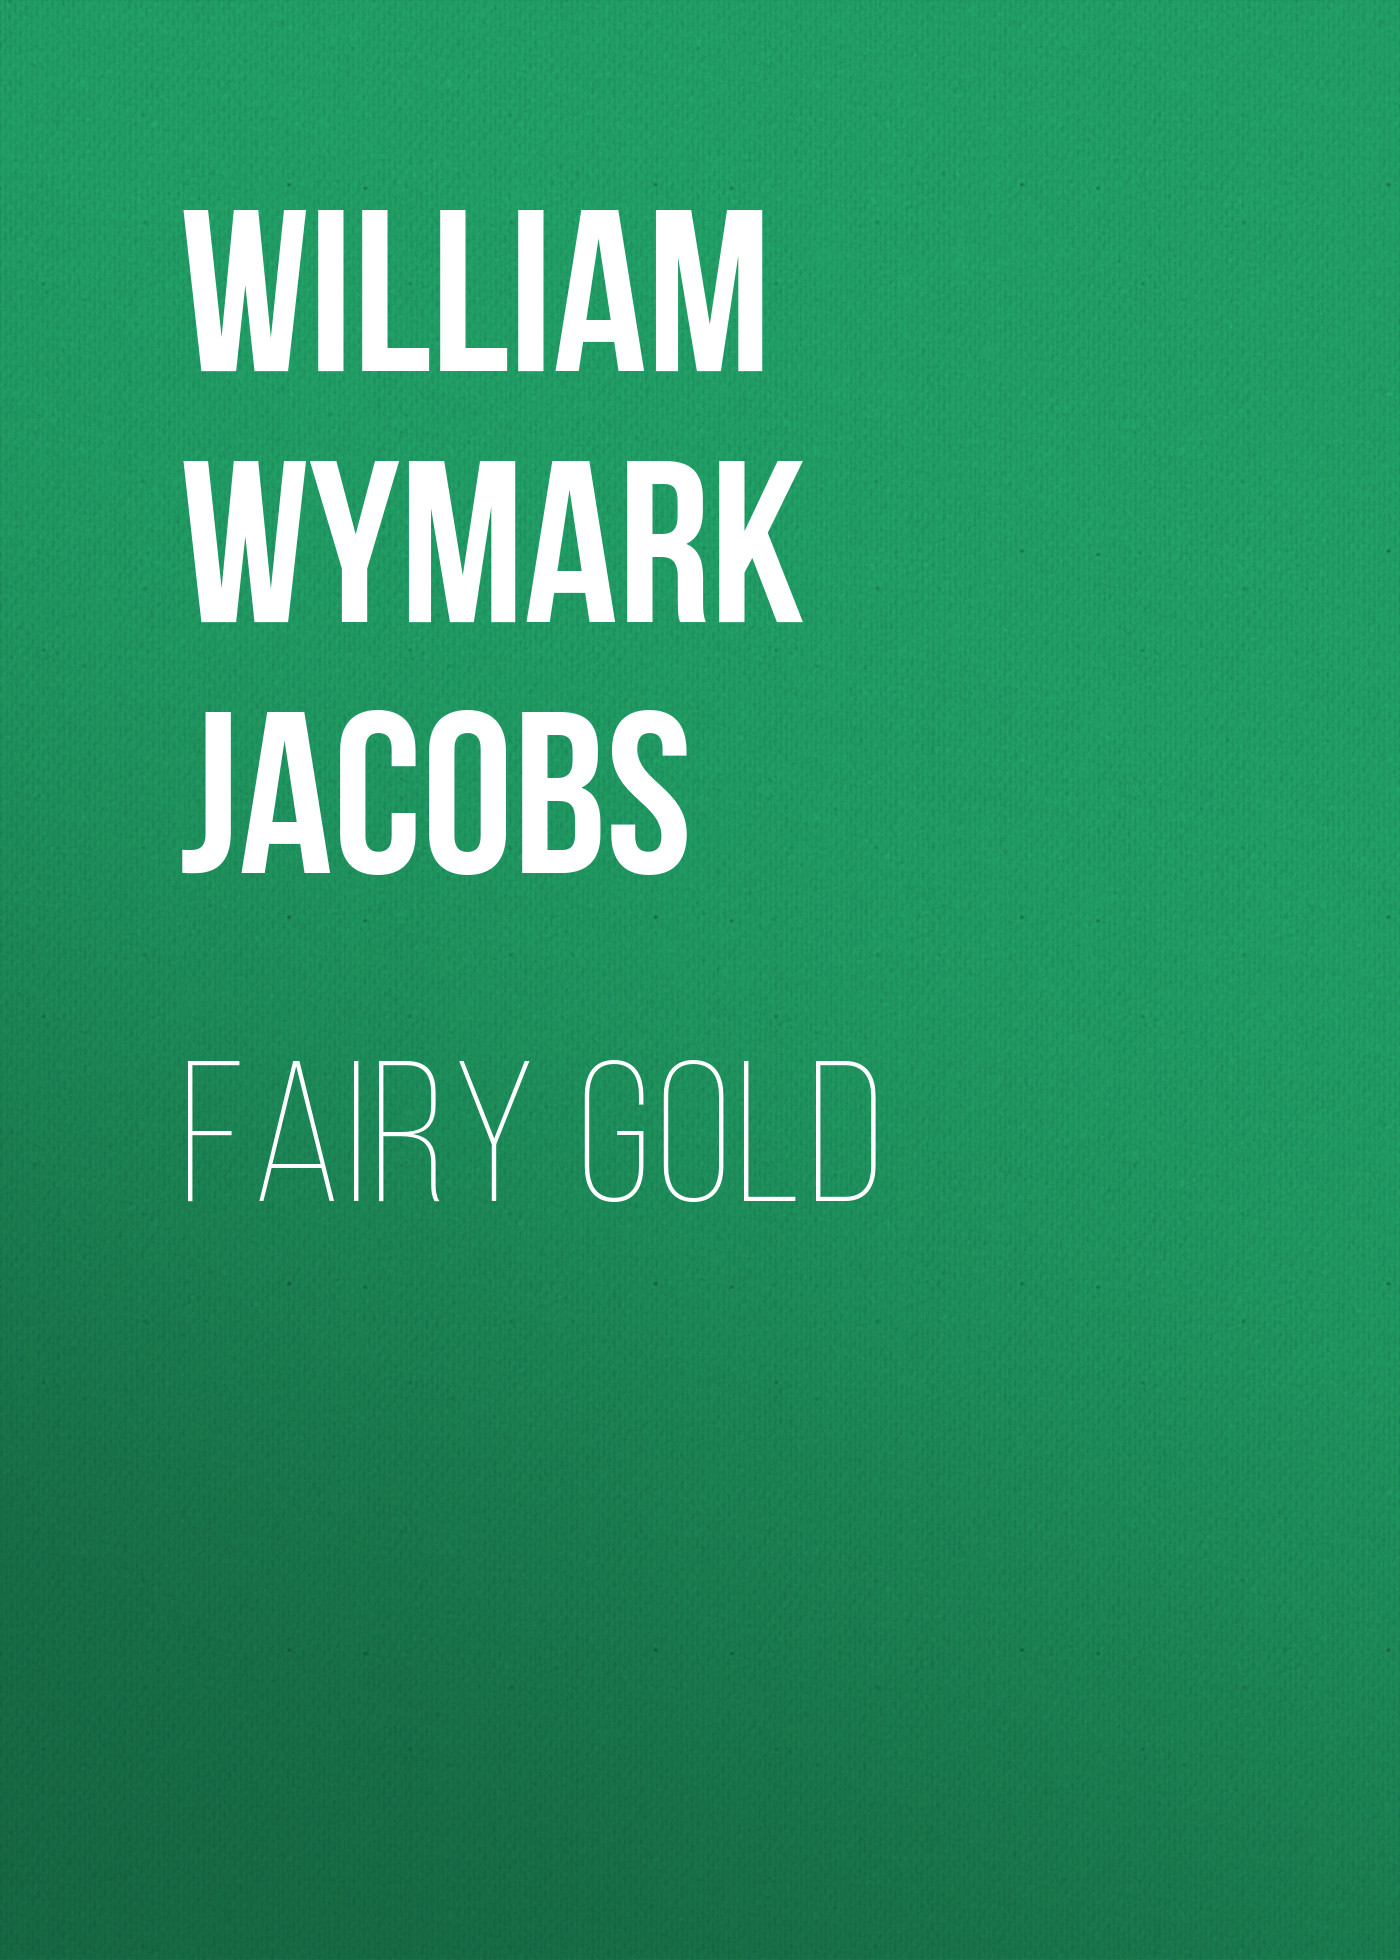 Книга Fairy Gold из серии , созданная William Wymark Jacobs, может относится к жанру Зарубежная классика, Зарубежная старинная литература. Стоимость электронной книги Fairy Gold с идентификатором 34842486 составляет 0 руб.